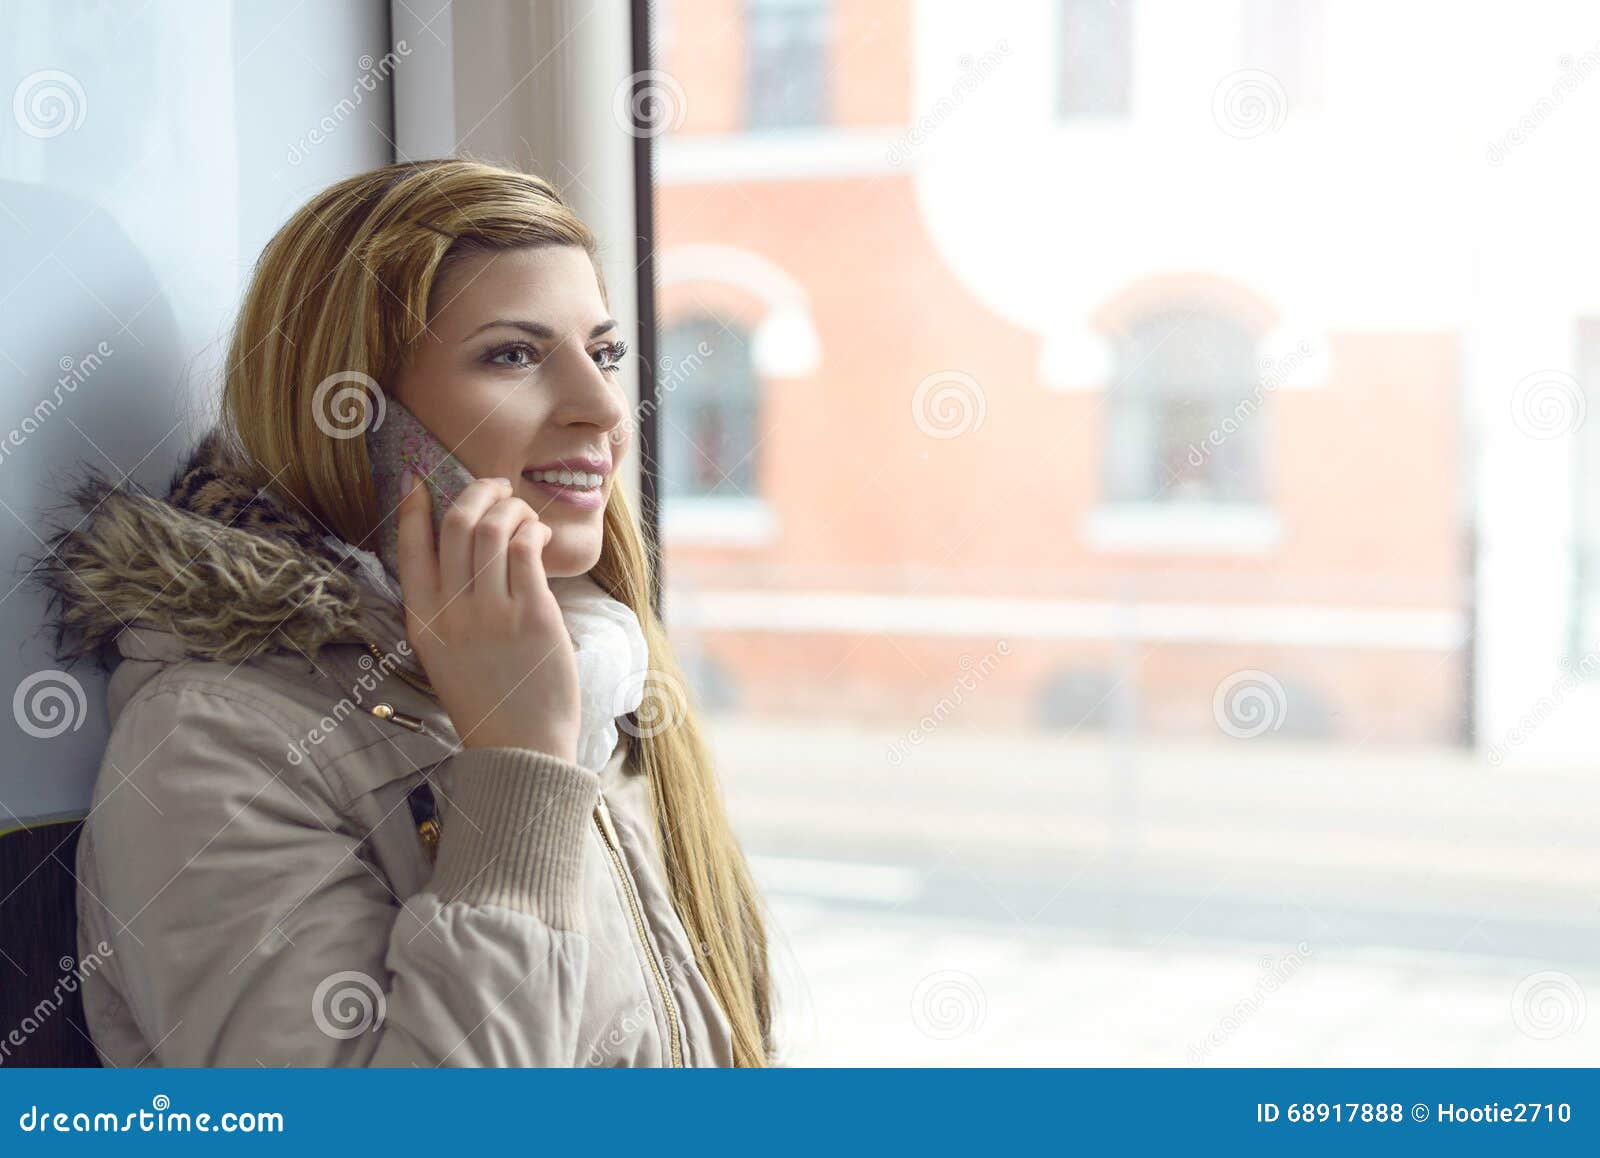 telephone portable femme celibataire rencontres face à face à orléans